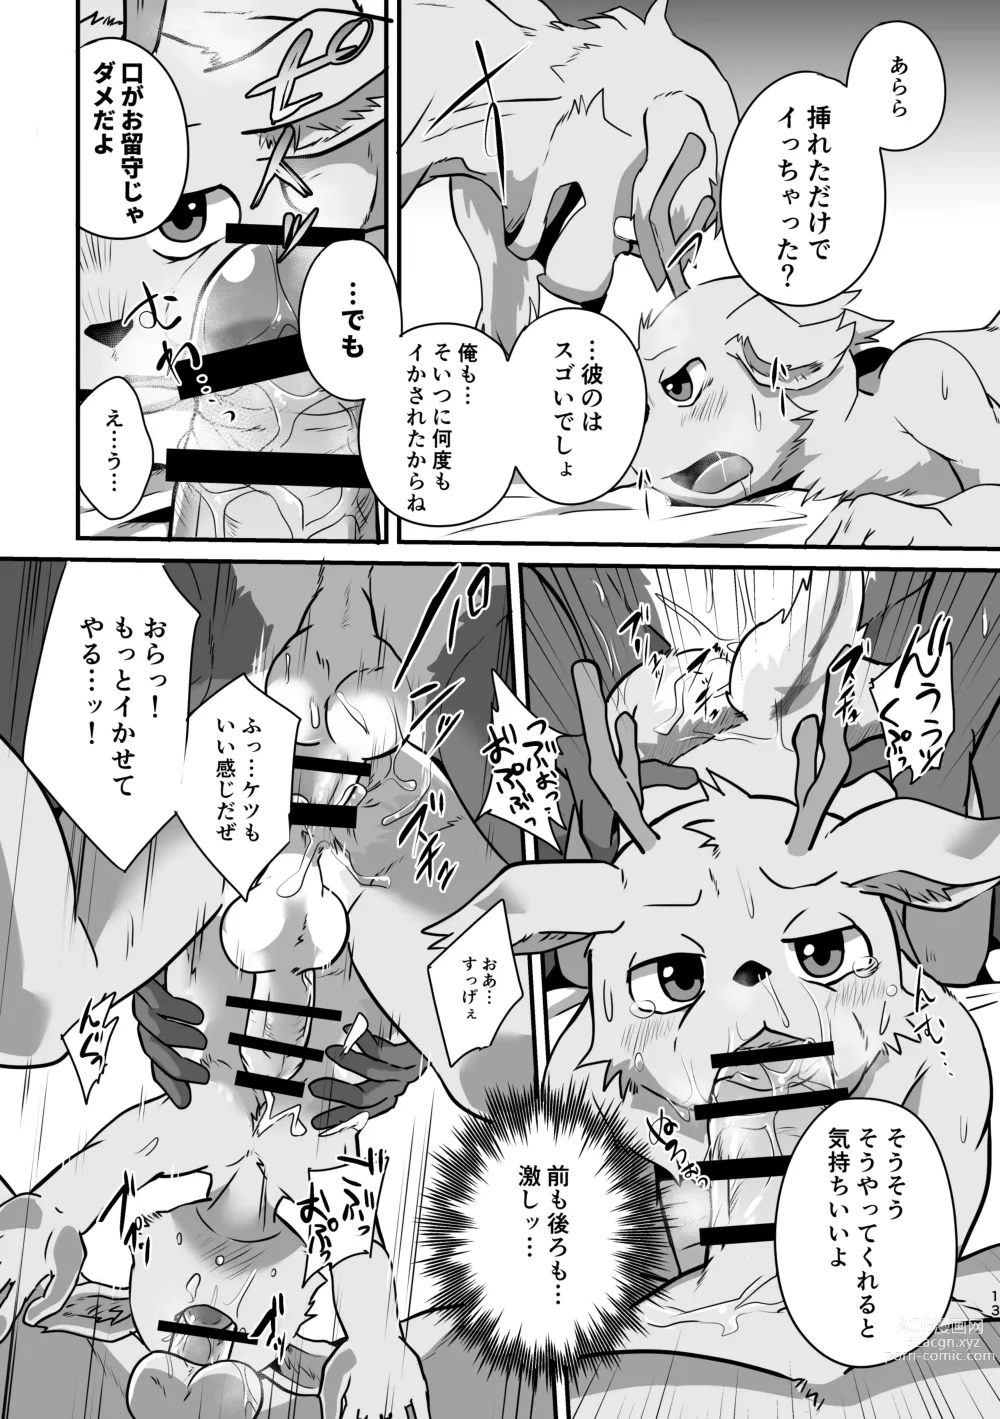 Page 12 of doujinshi Boku-Tachi Futari wa Neko shitai!